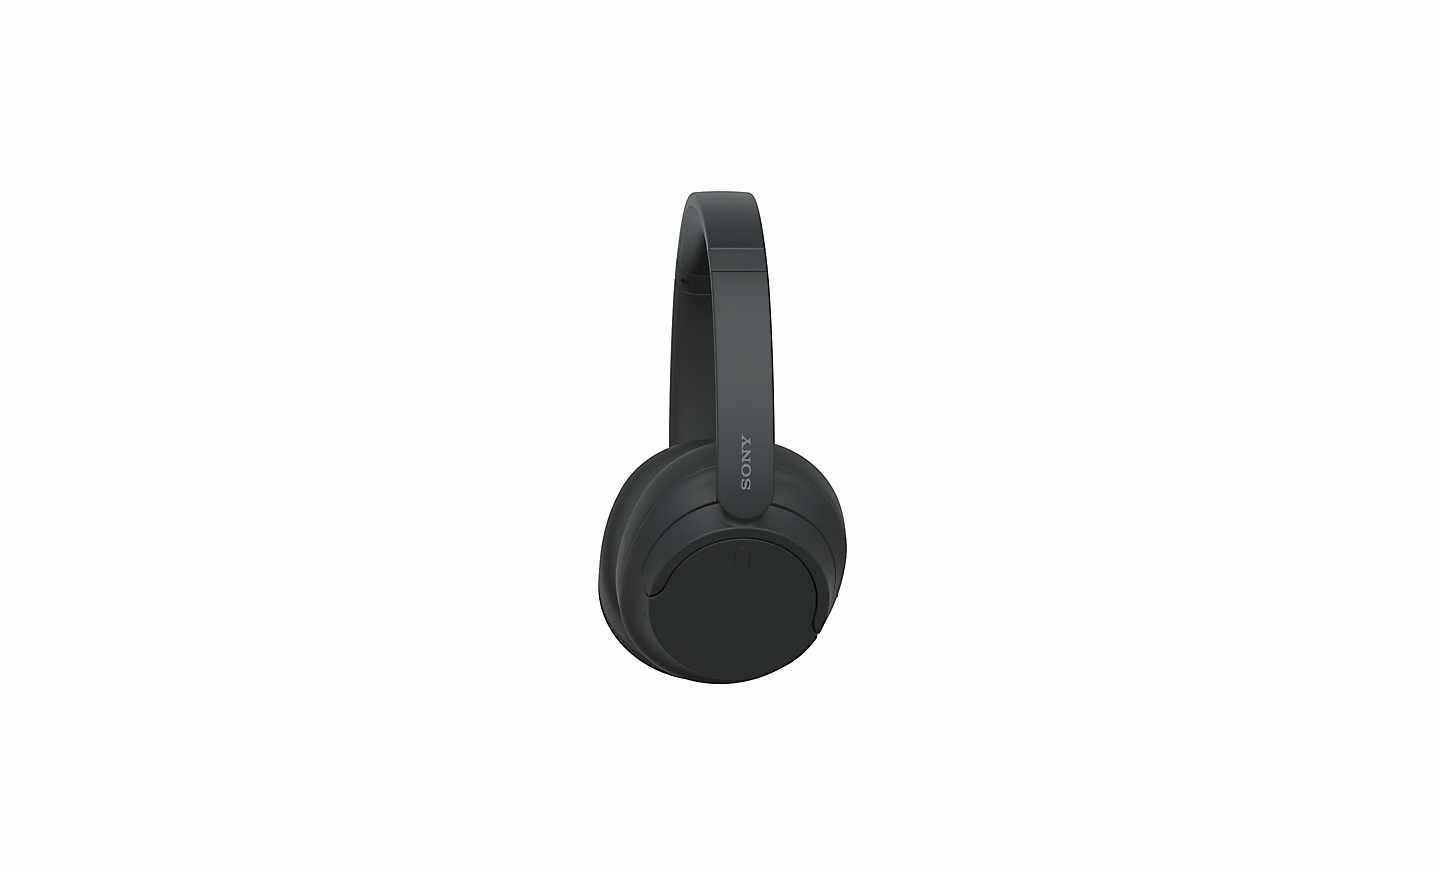 흰색 배경 위에 있는 블랙 색상의 소니 WH-CH720 헤드폰 이미지